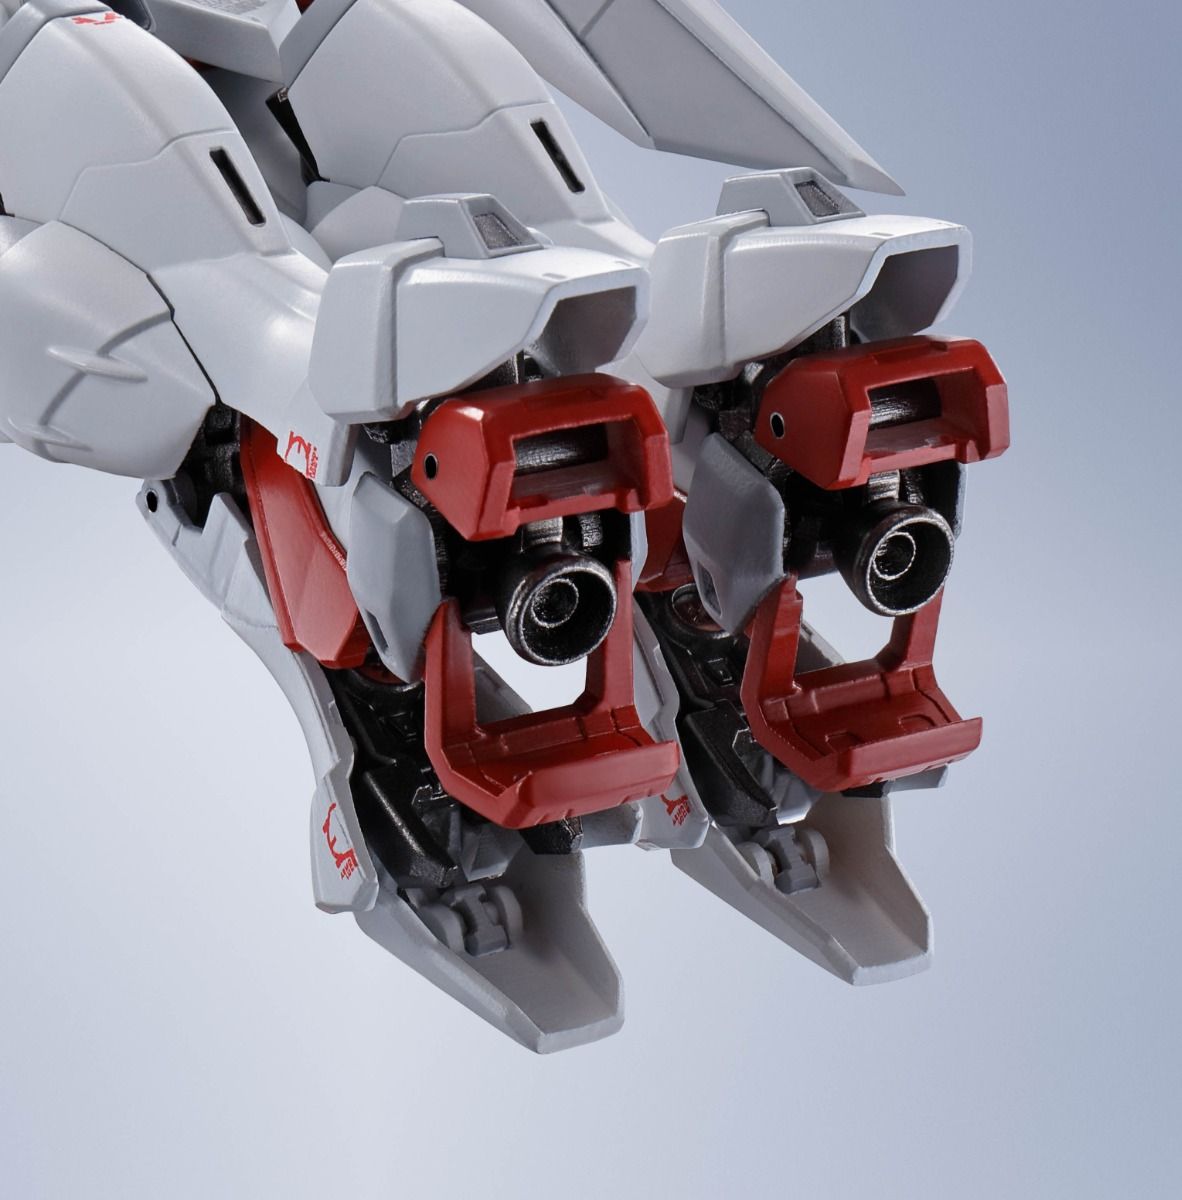 Metal Robot Spirits Wing Gundam Zero <Side MS> Figure